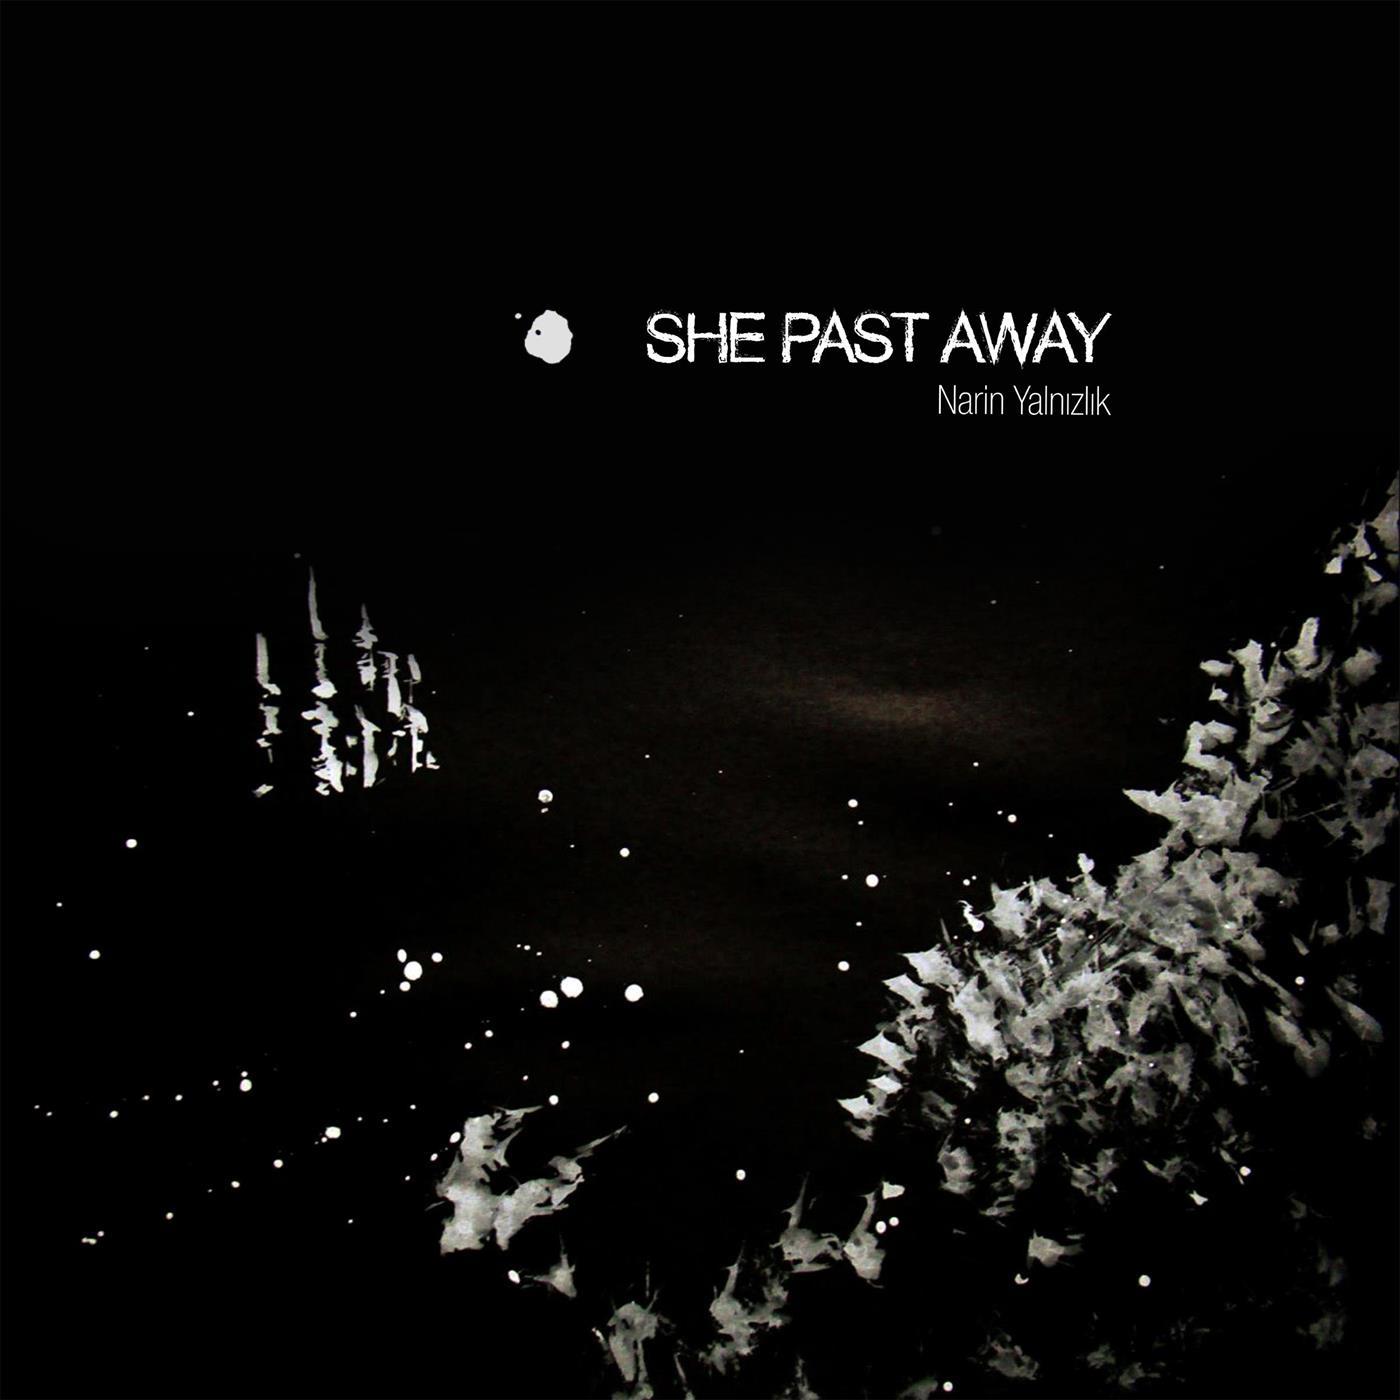 She Past Away - Ice Kapanis II